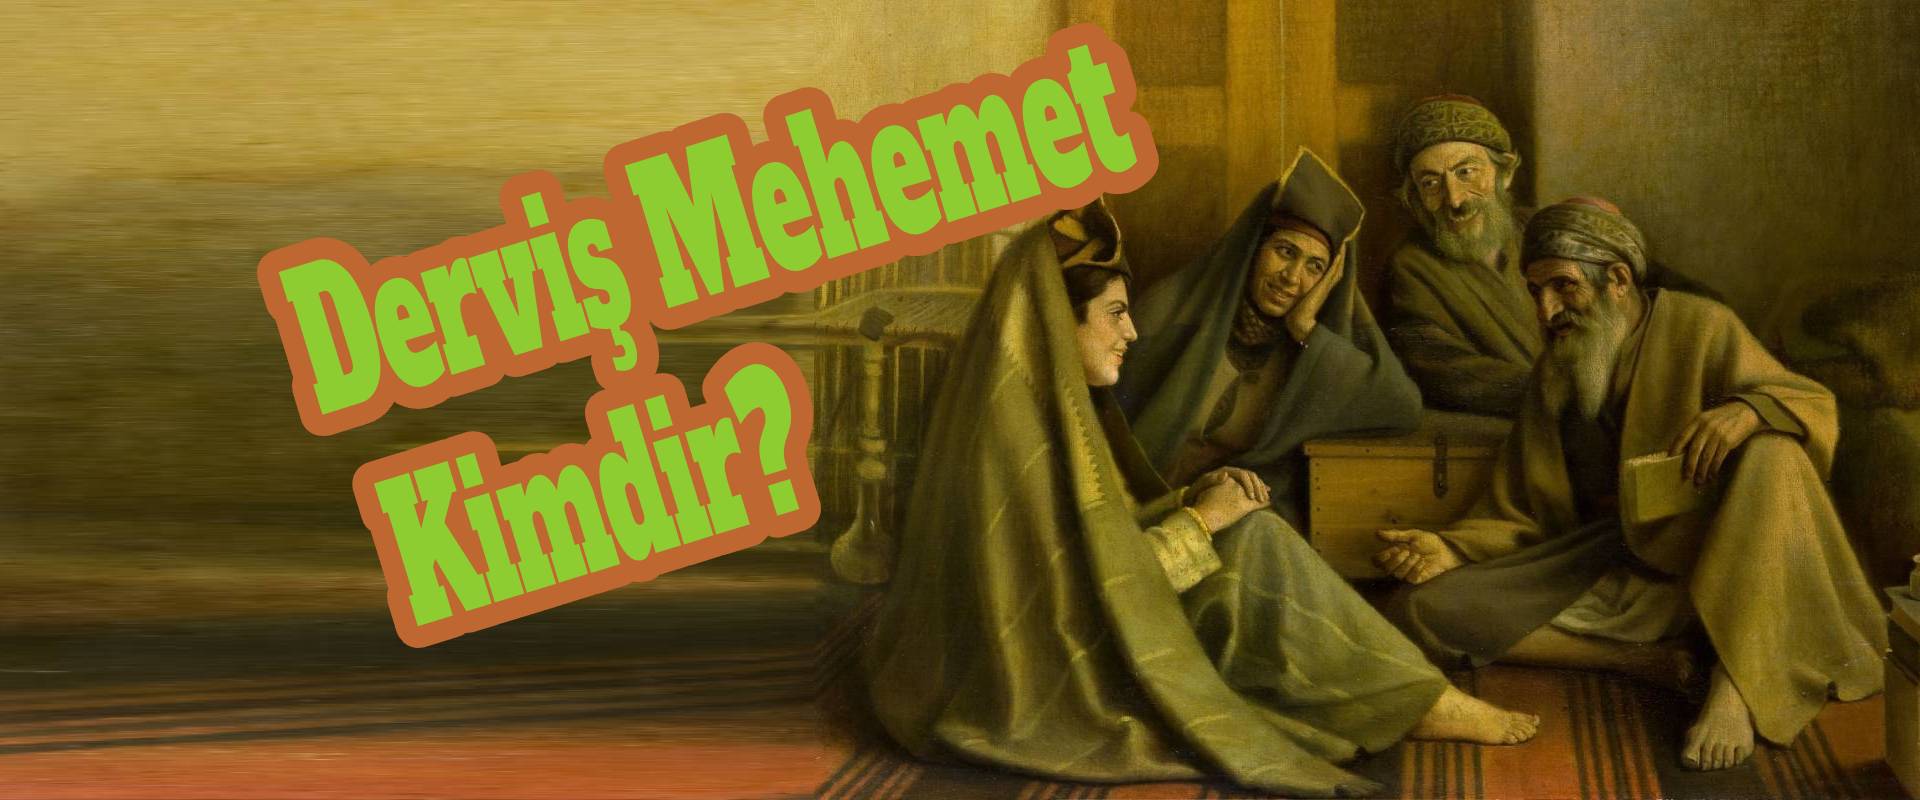 Derviş Mehemt kimdir? En ünlü Medyum Hoca , Derviş anlamı , Derviş ne demek?